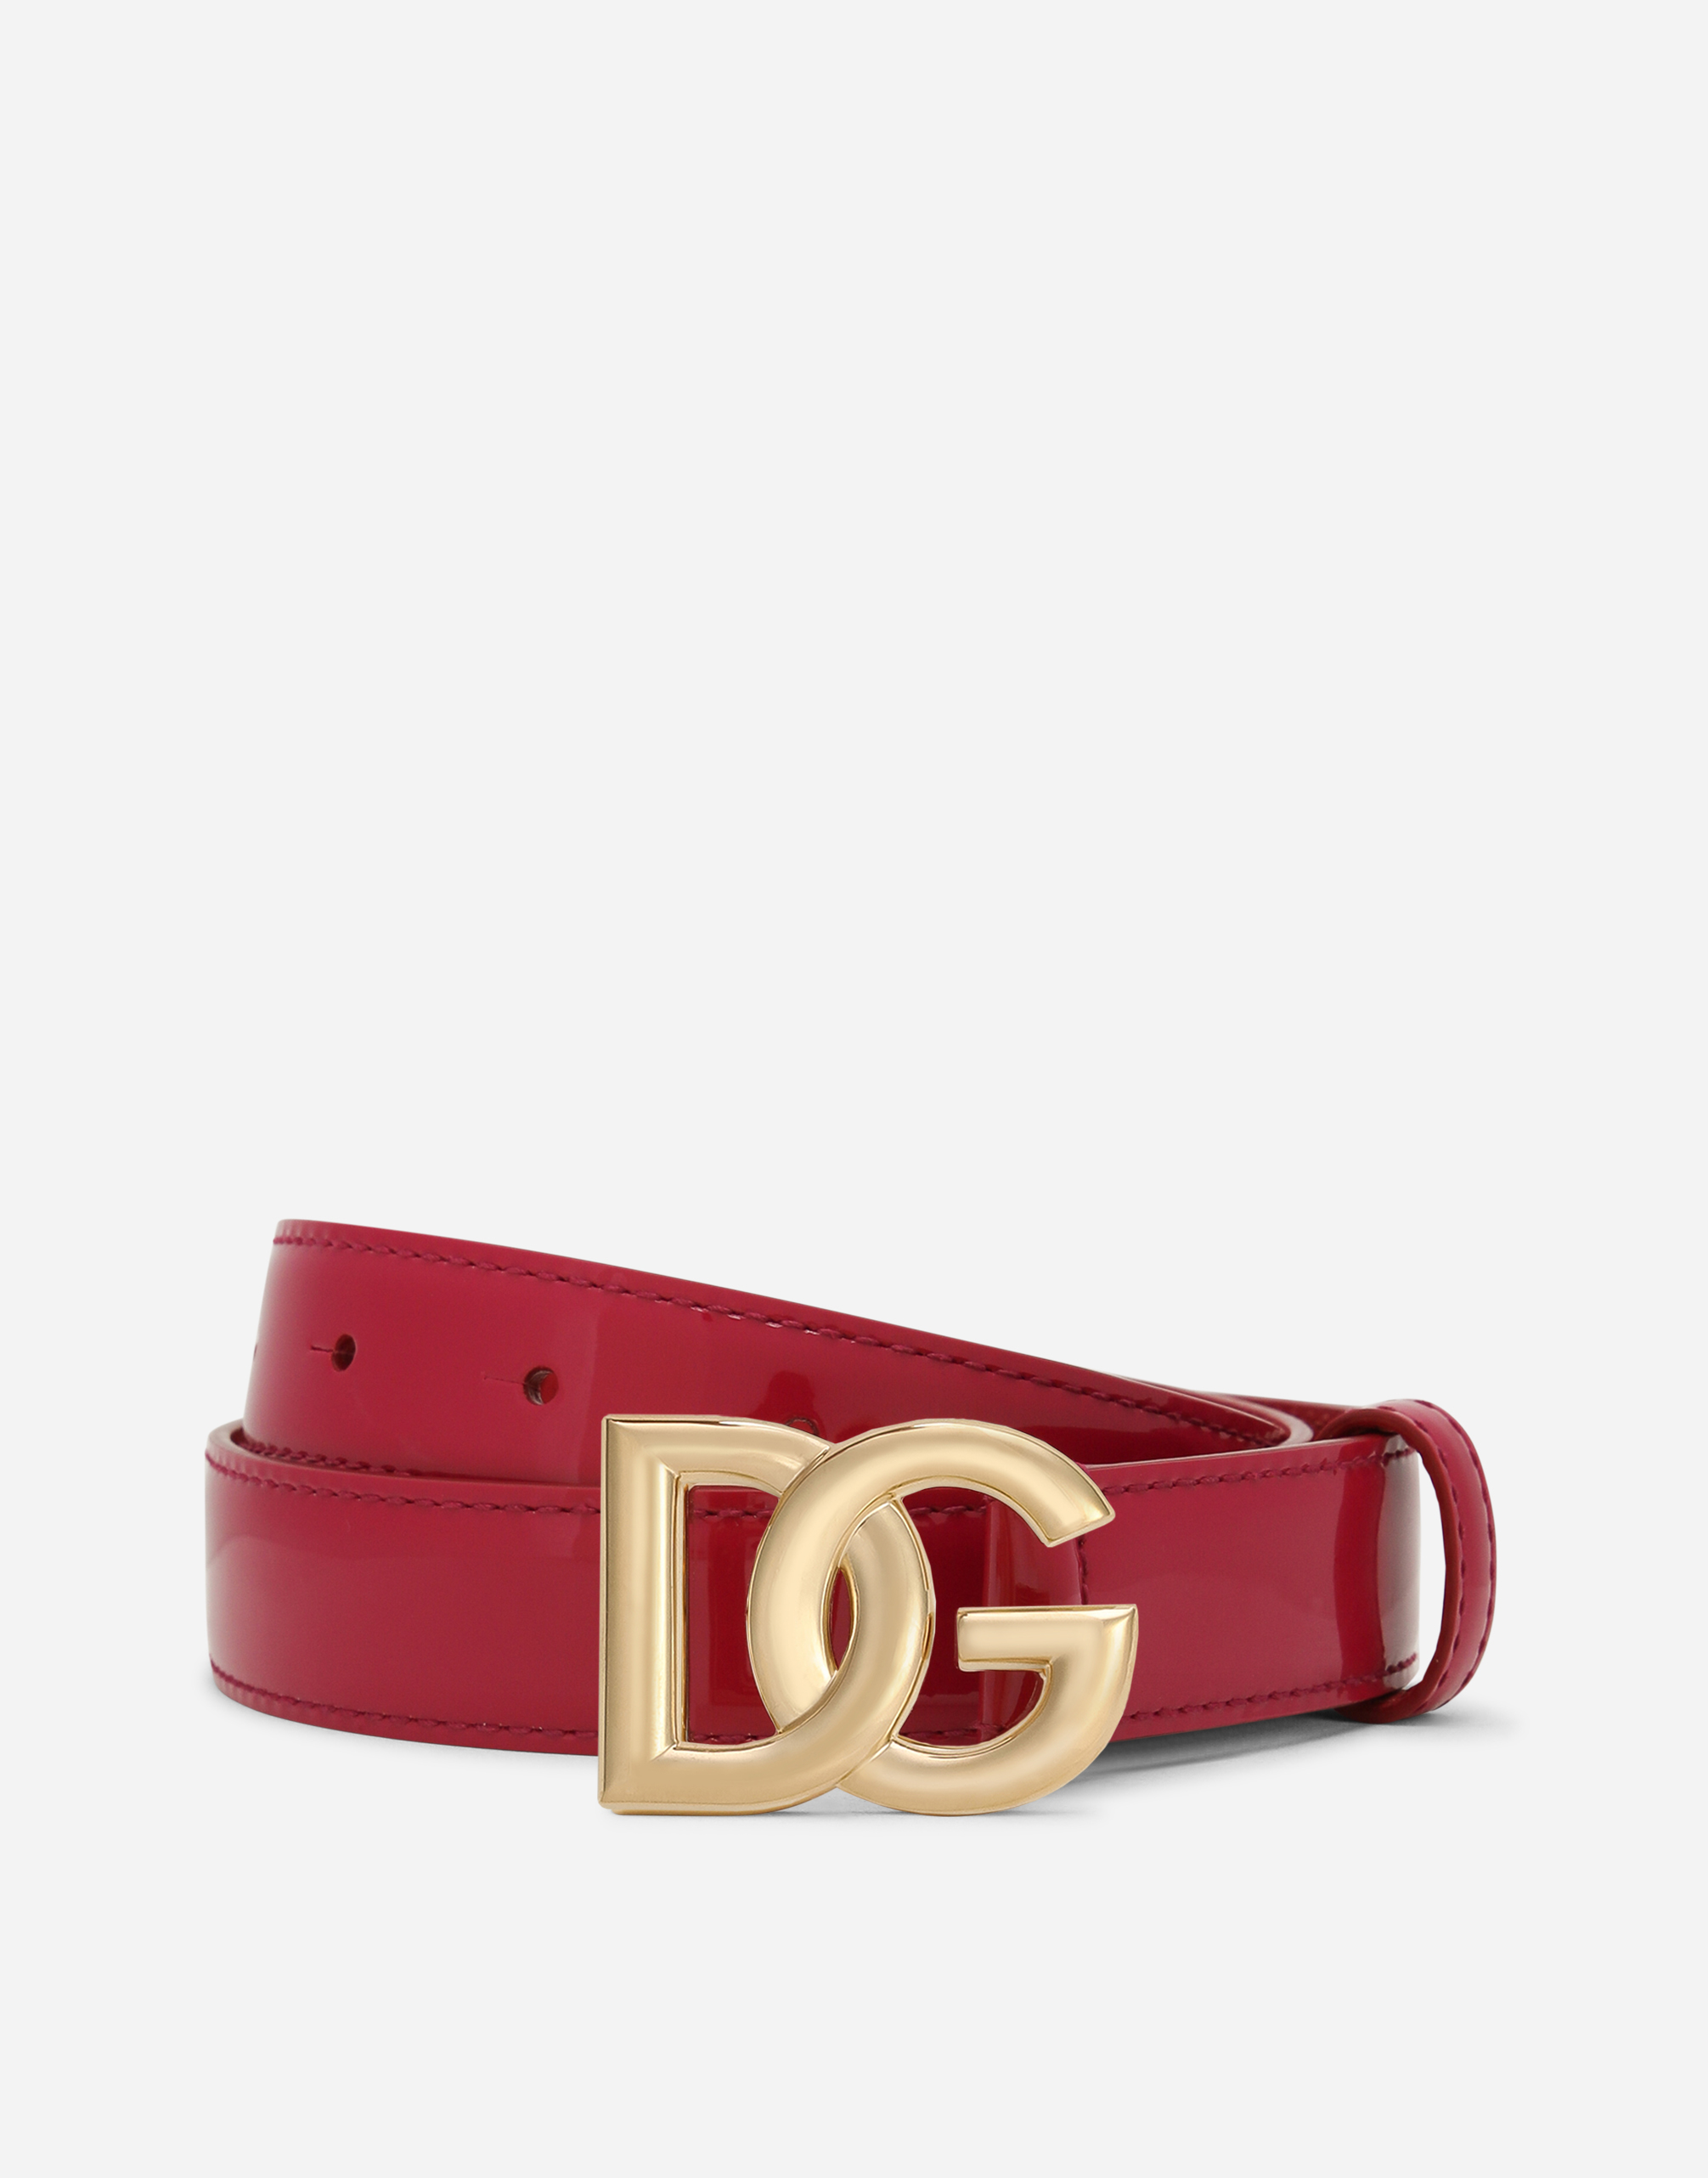 DG logo belt in Fuchsia